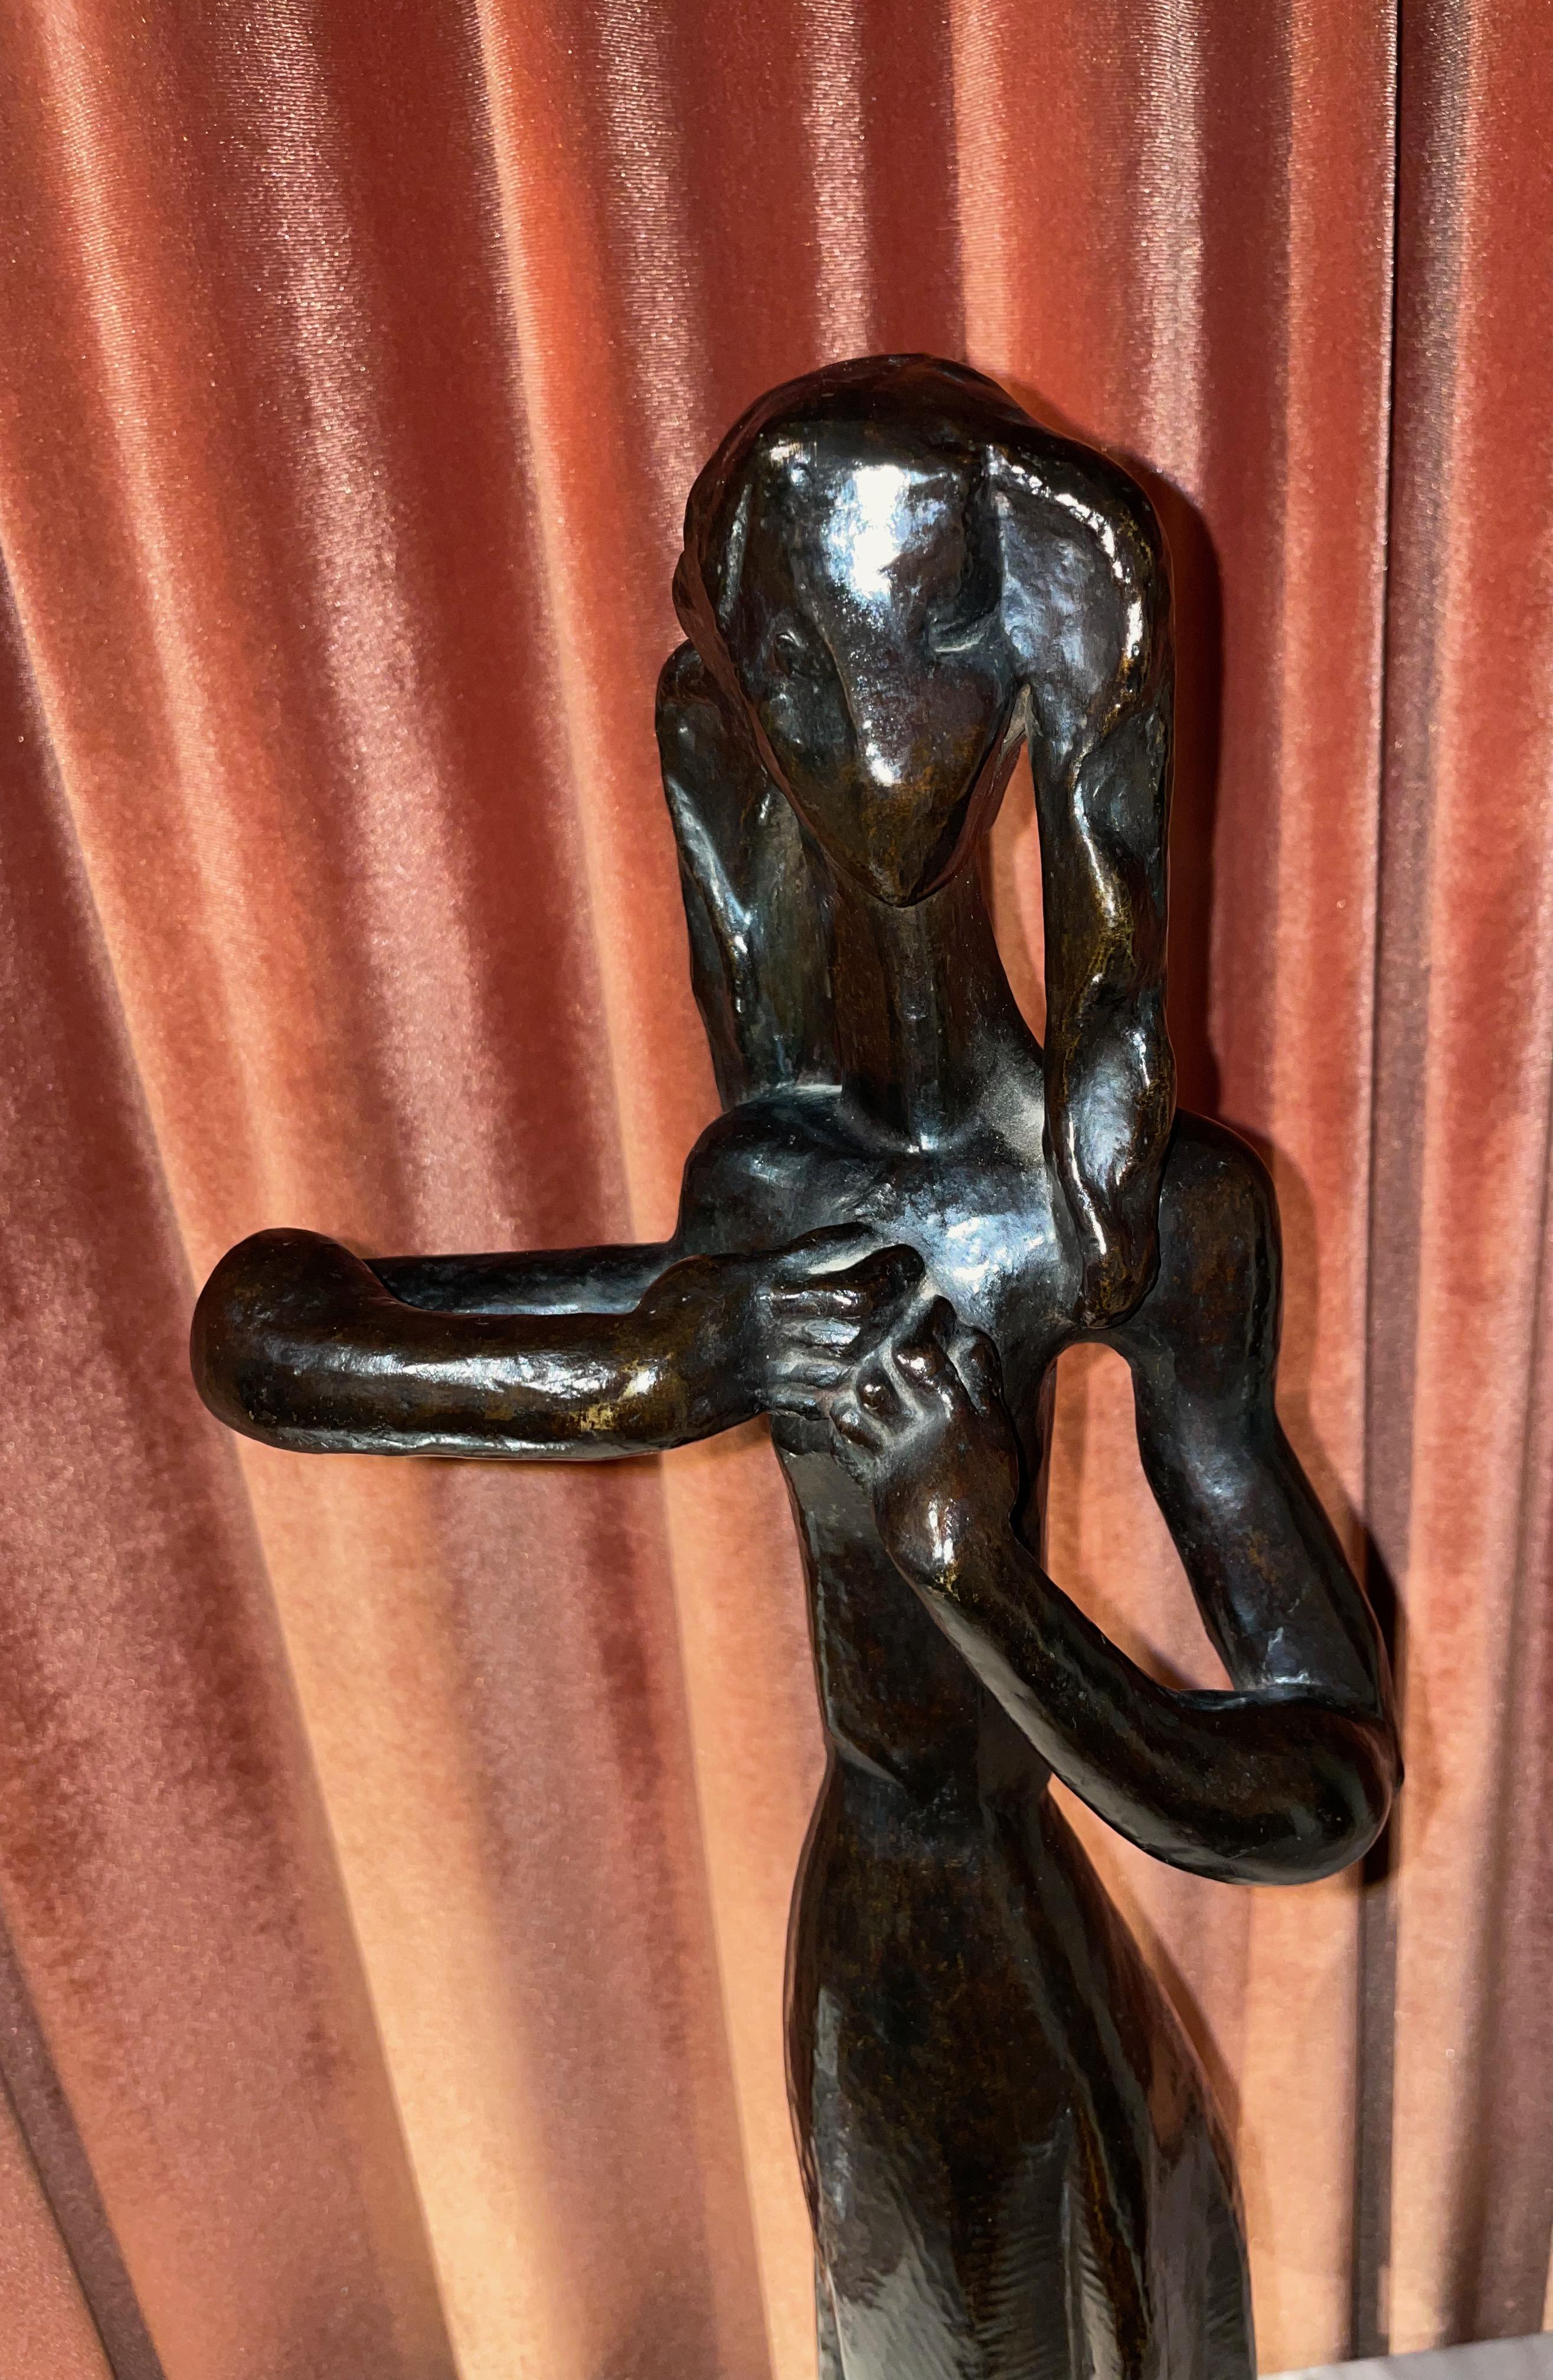 Art Deco Bronze Dancing Figure by Cubist Sculptor Joseph Csaky